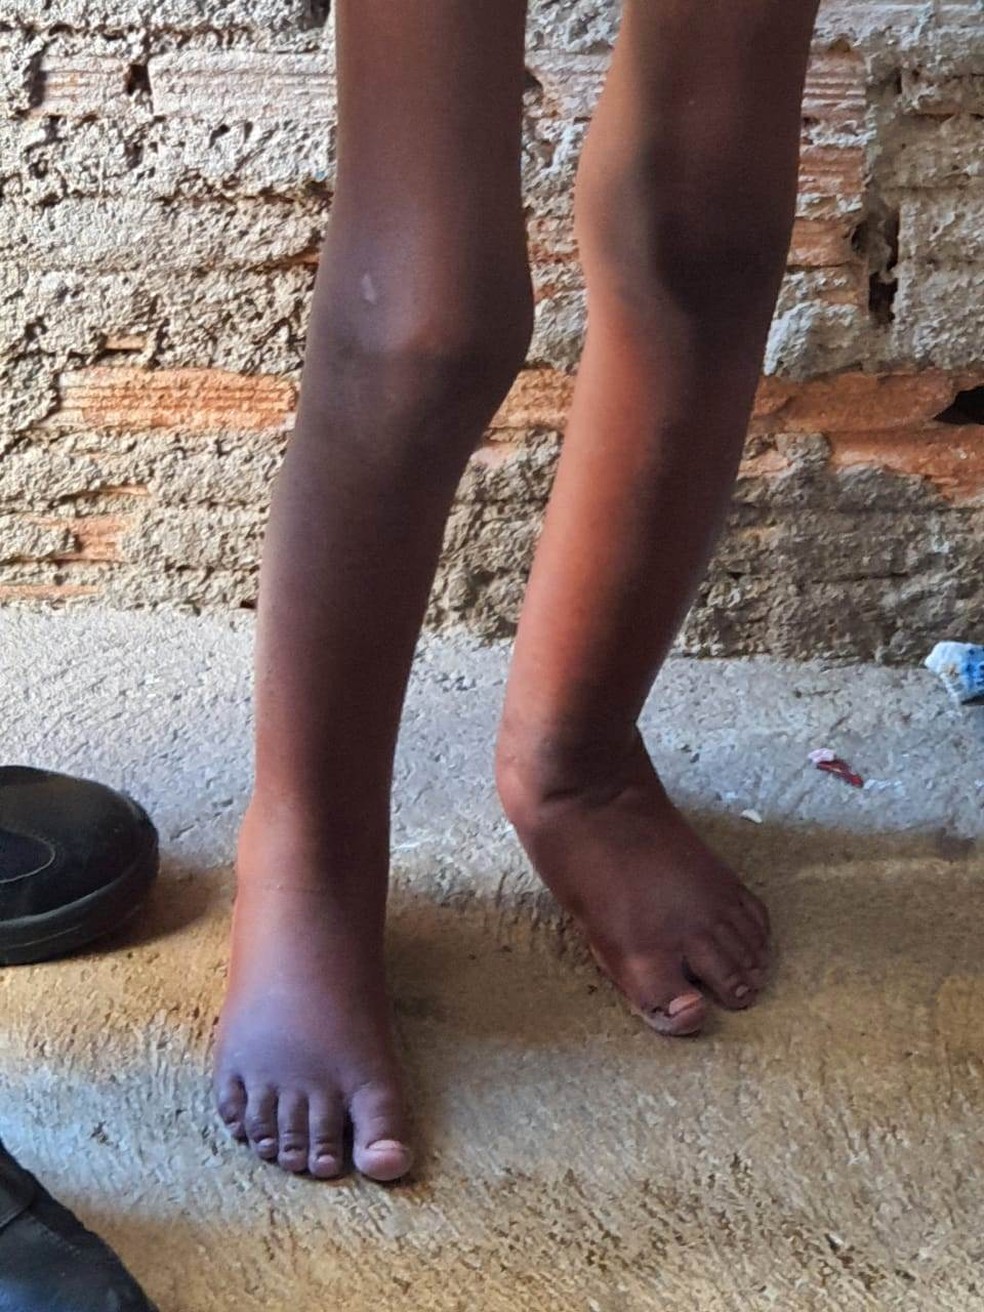 Polícia resgata menino de 11 anos torturado vivendo em barril 6